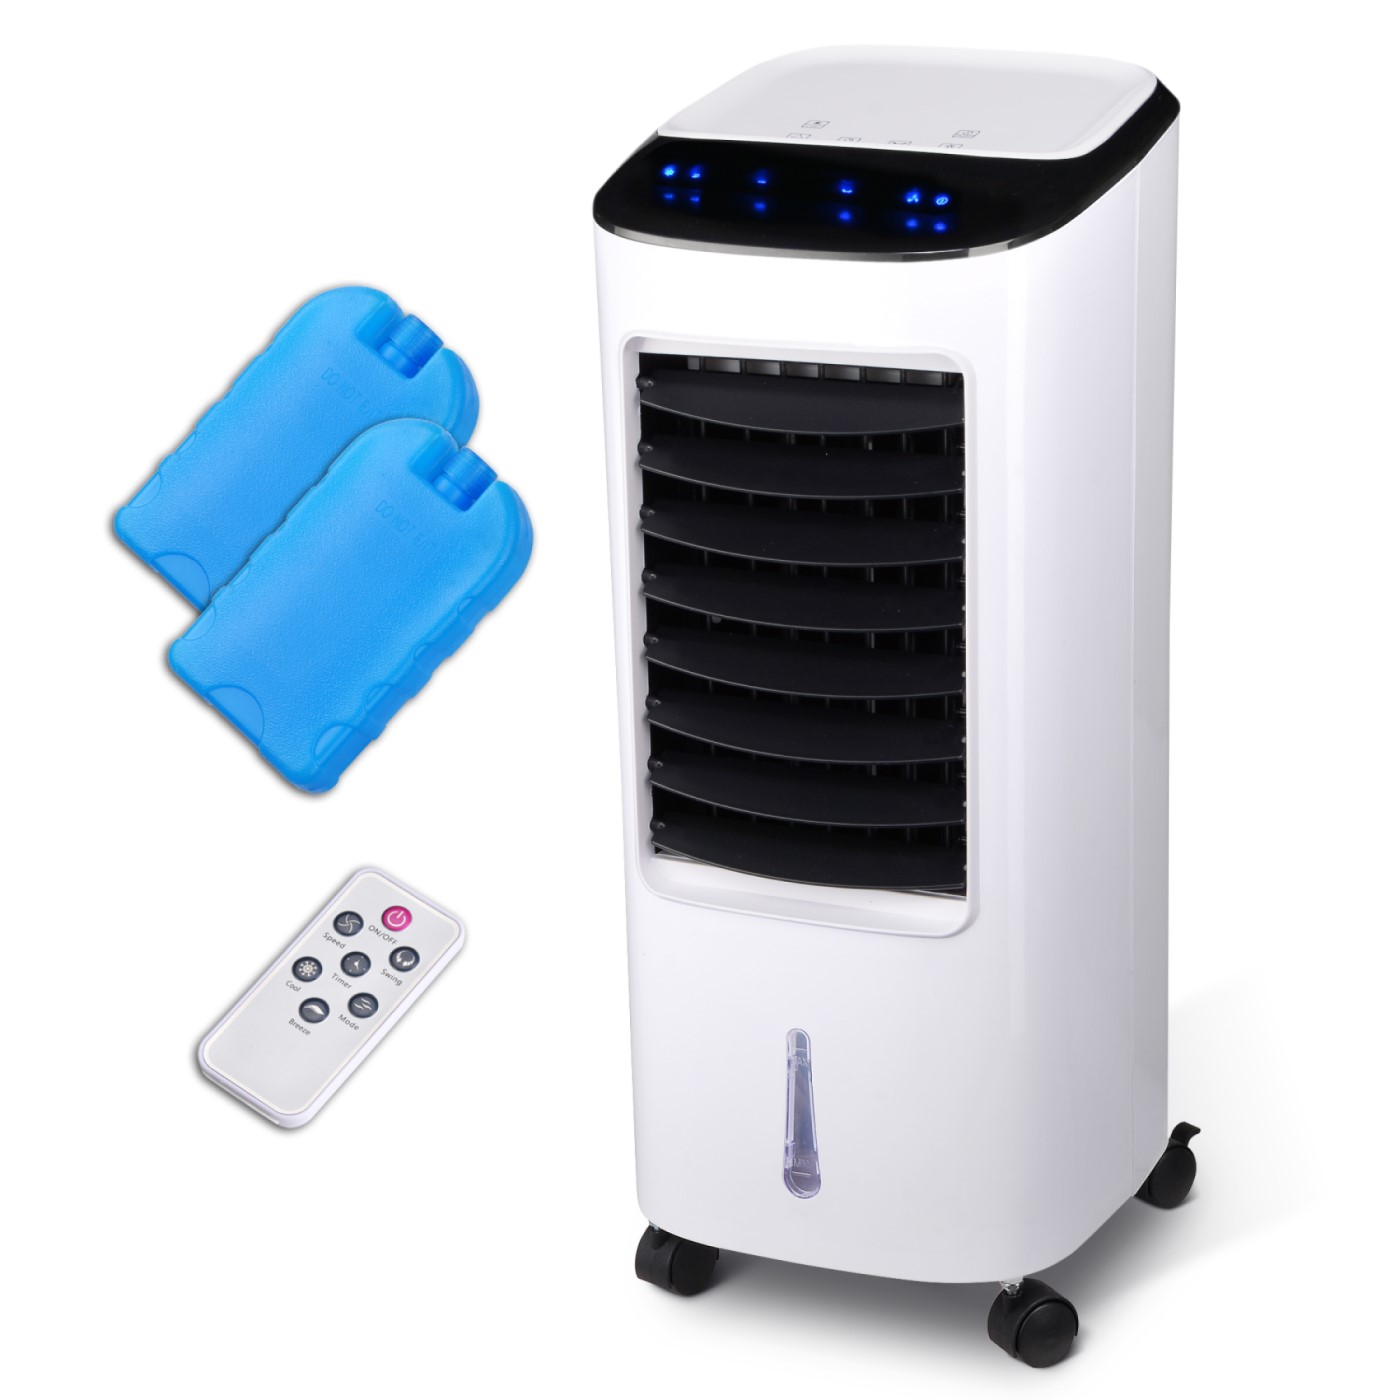 Achieve The Optimum Room Temperature With This Portable Air Conditioner